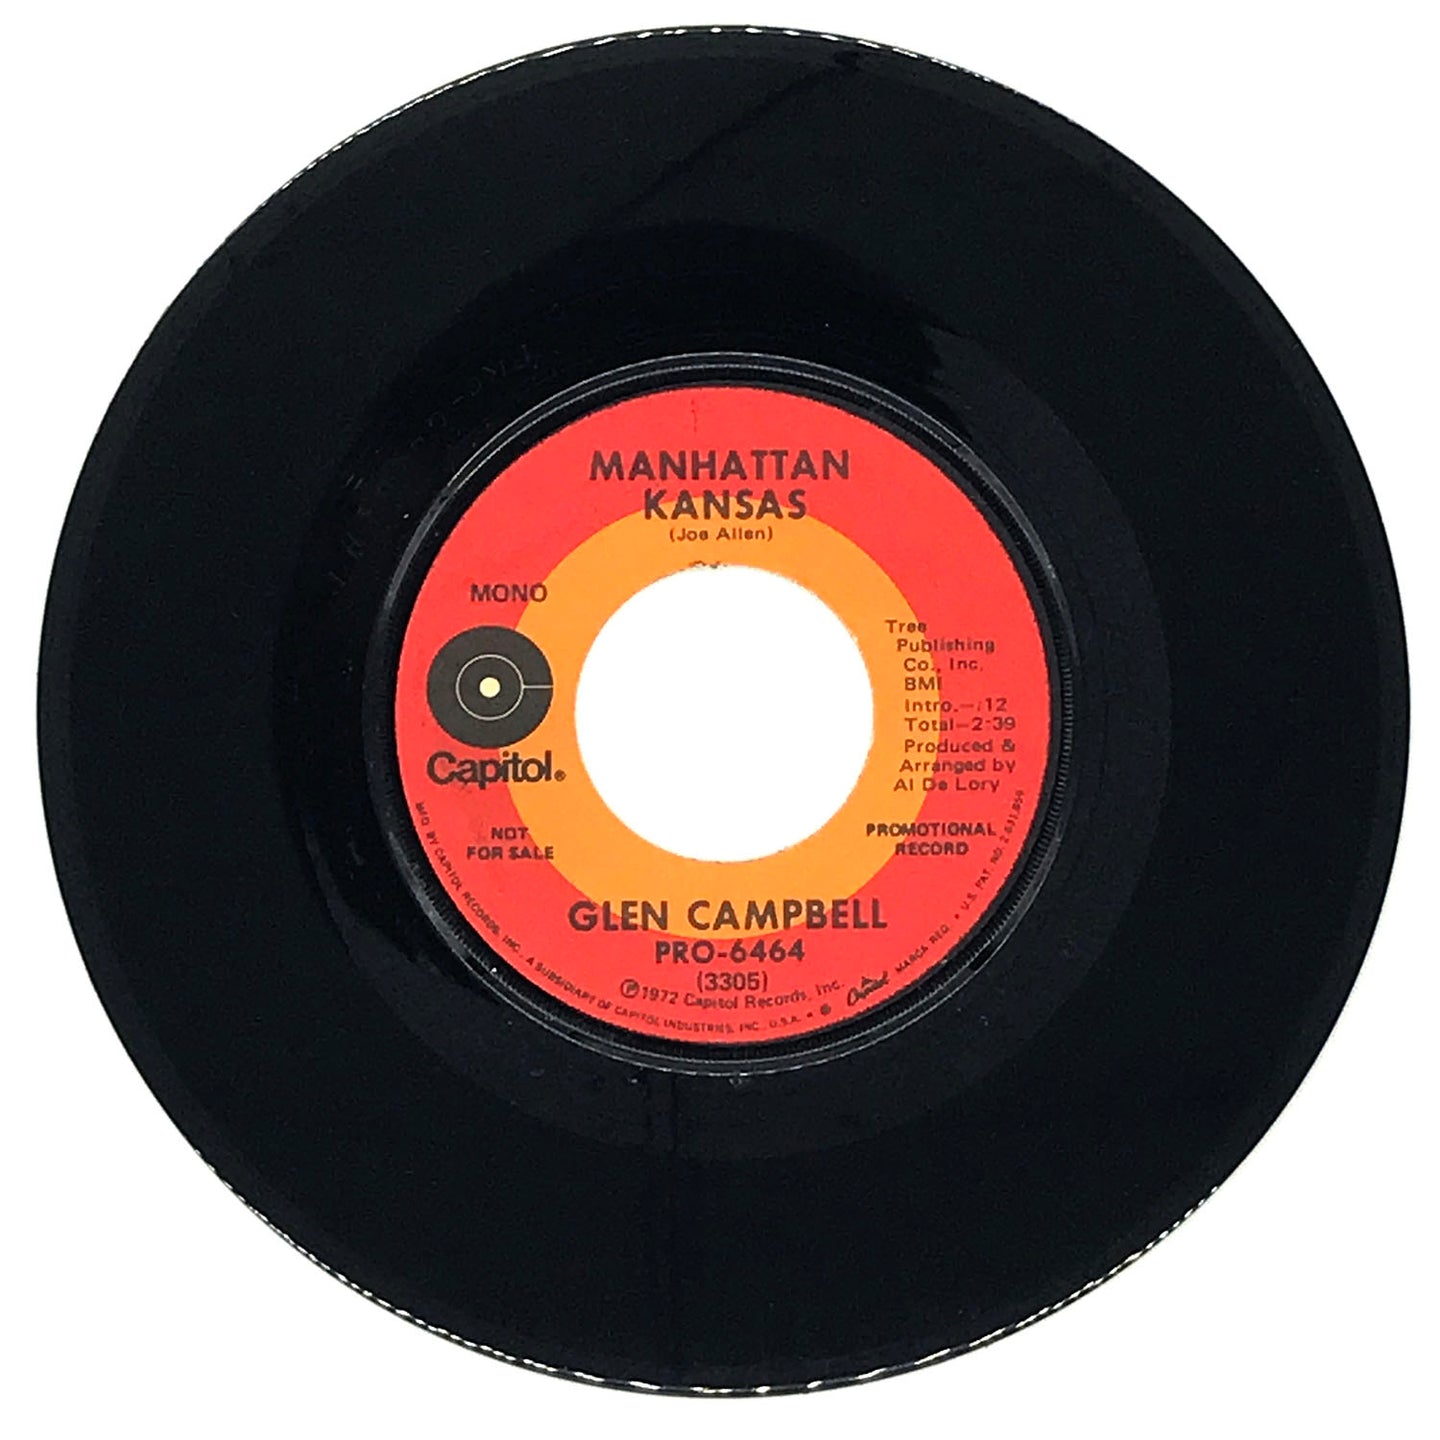 Glen Campbell : MANHATTAN KANSAS/ MANHATTAN KANSAS